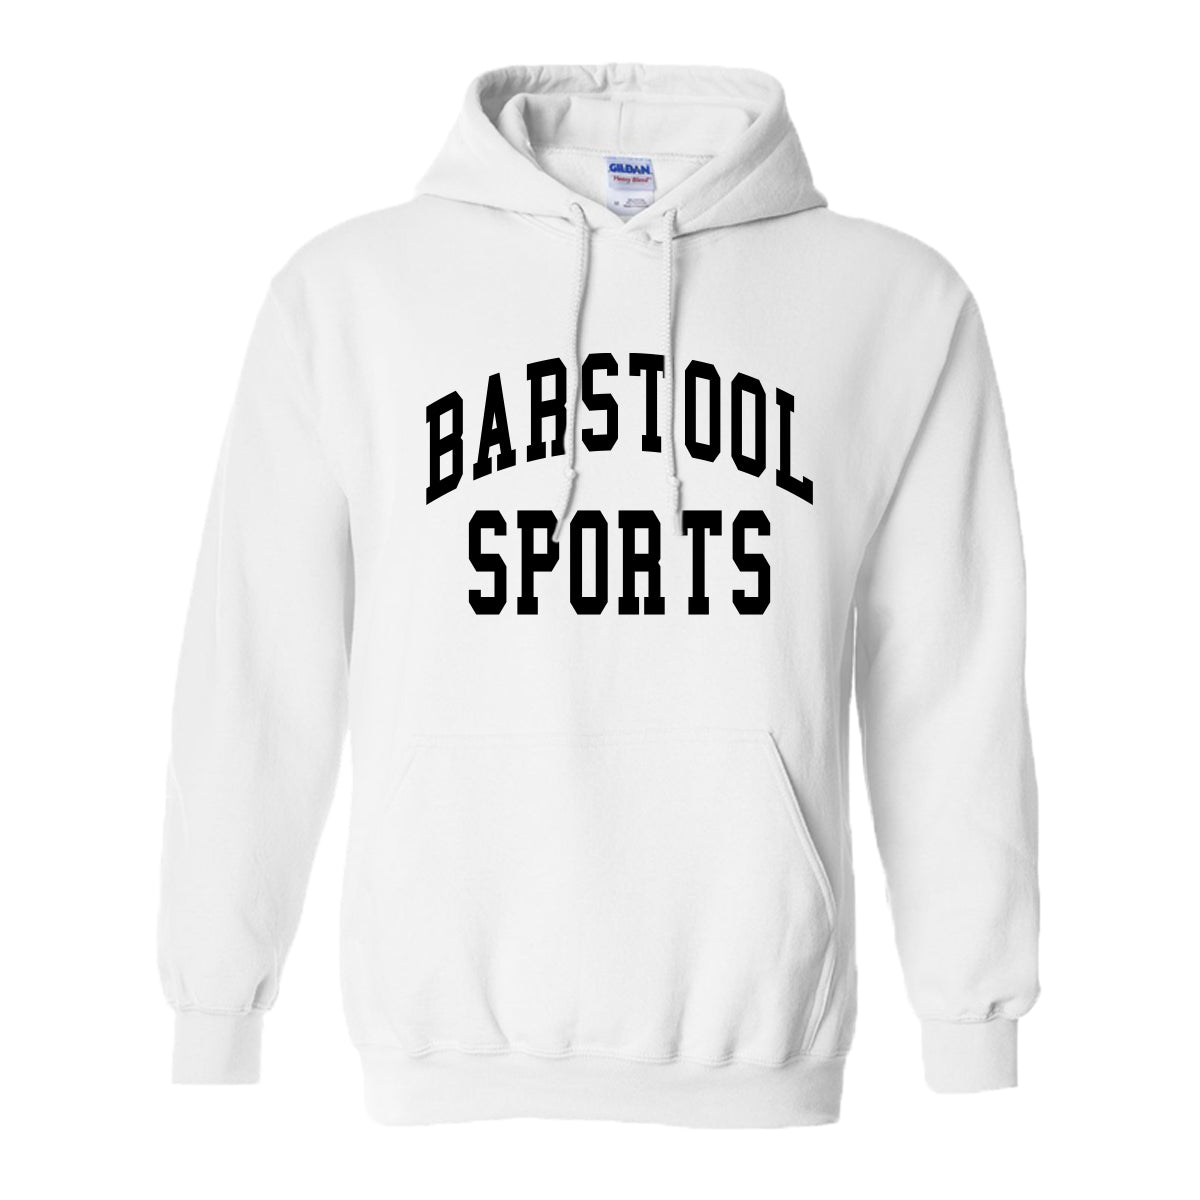 Barstool Sports Hoodie